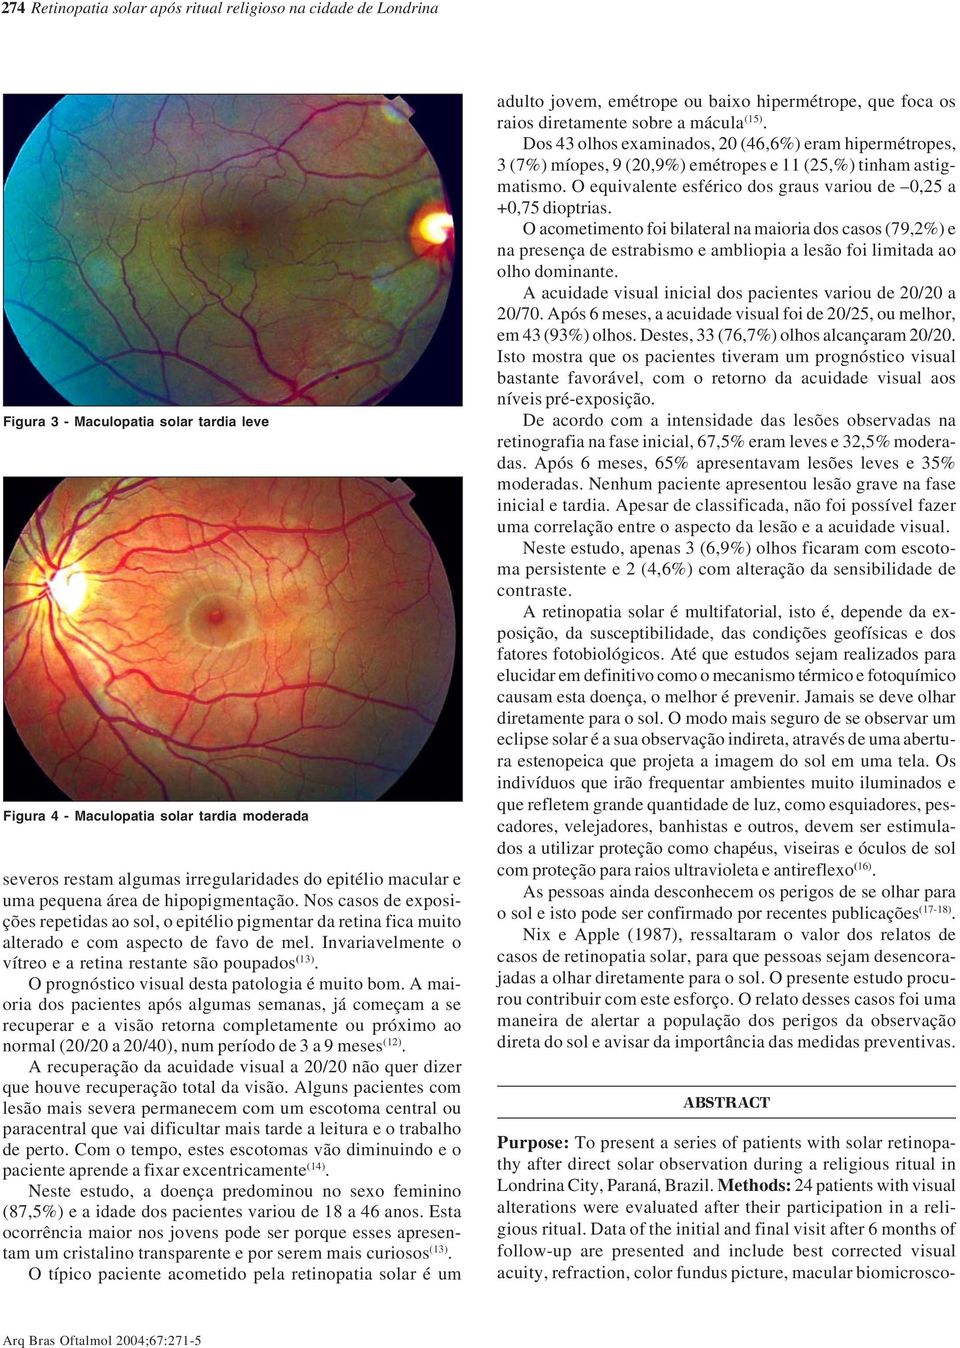 Invariavelmente o vítreo e a retina restante são poupados (13). O prognóstico visual desta patologia é muito bom.